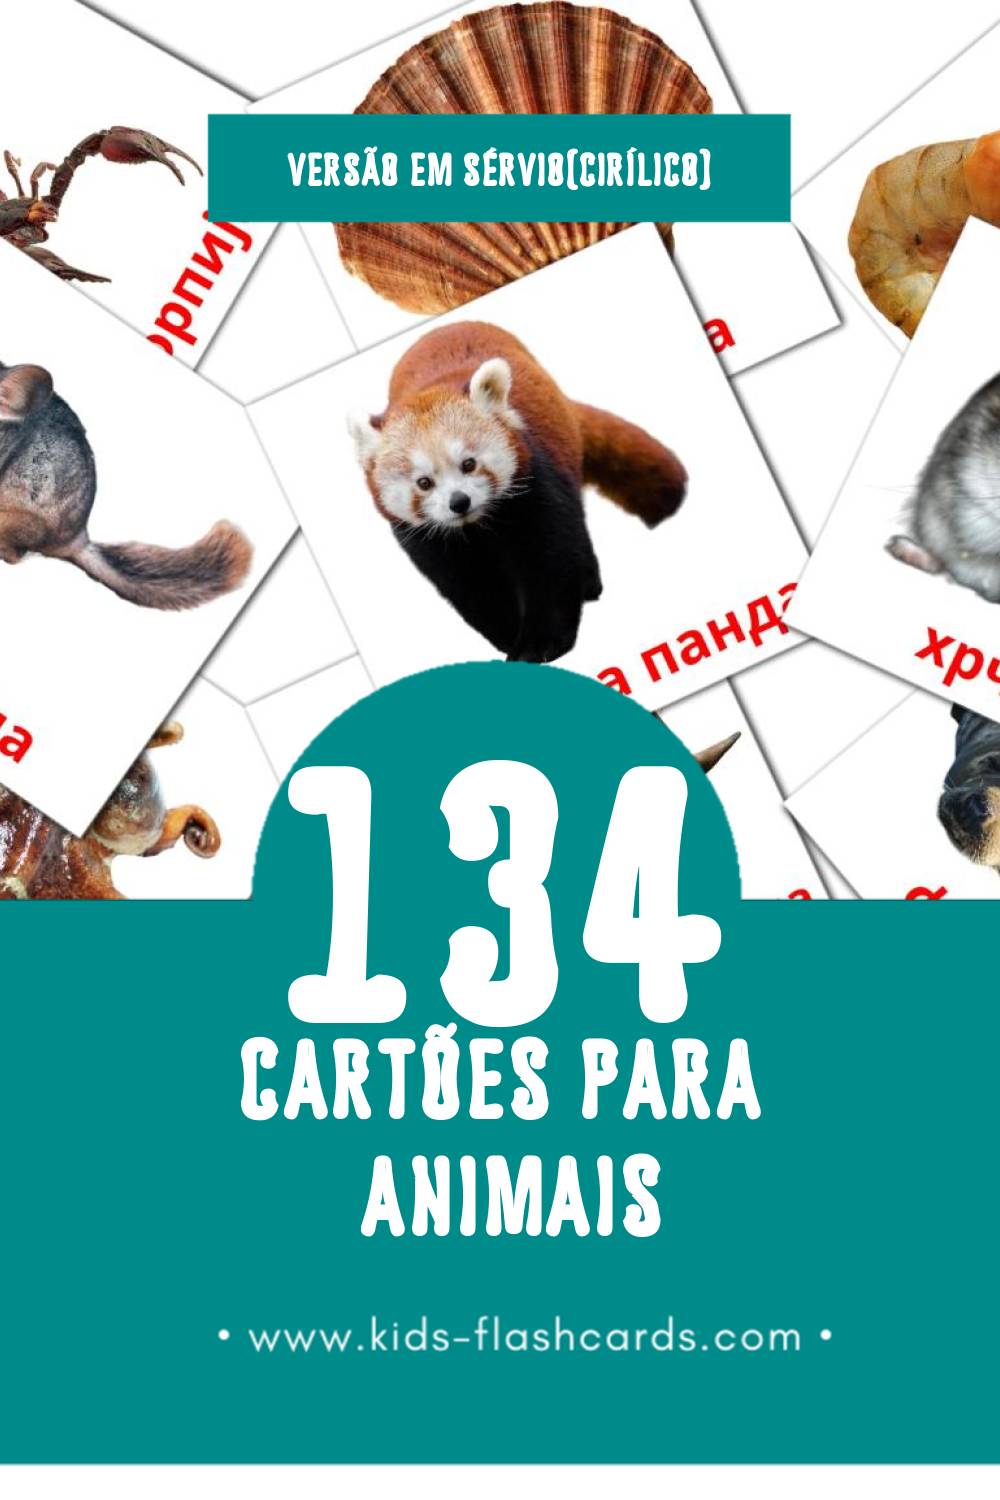 Flashcards de Животиње Visuais para Toddlers (134 cartões em Sérvio(cirílico))